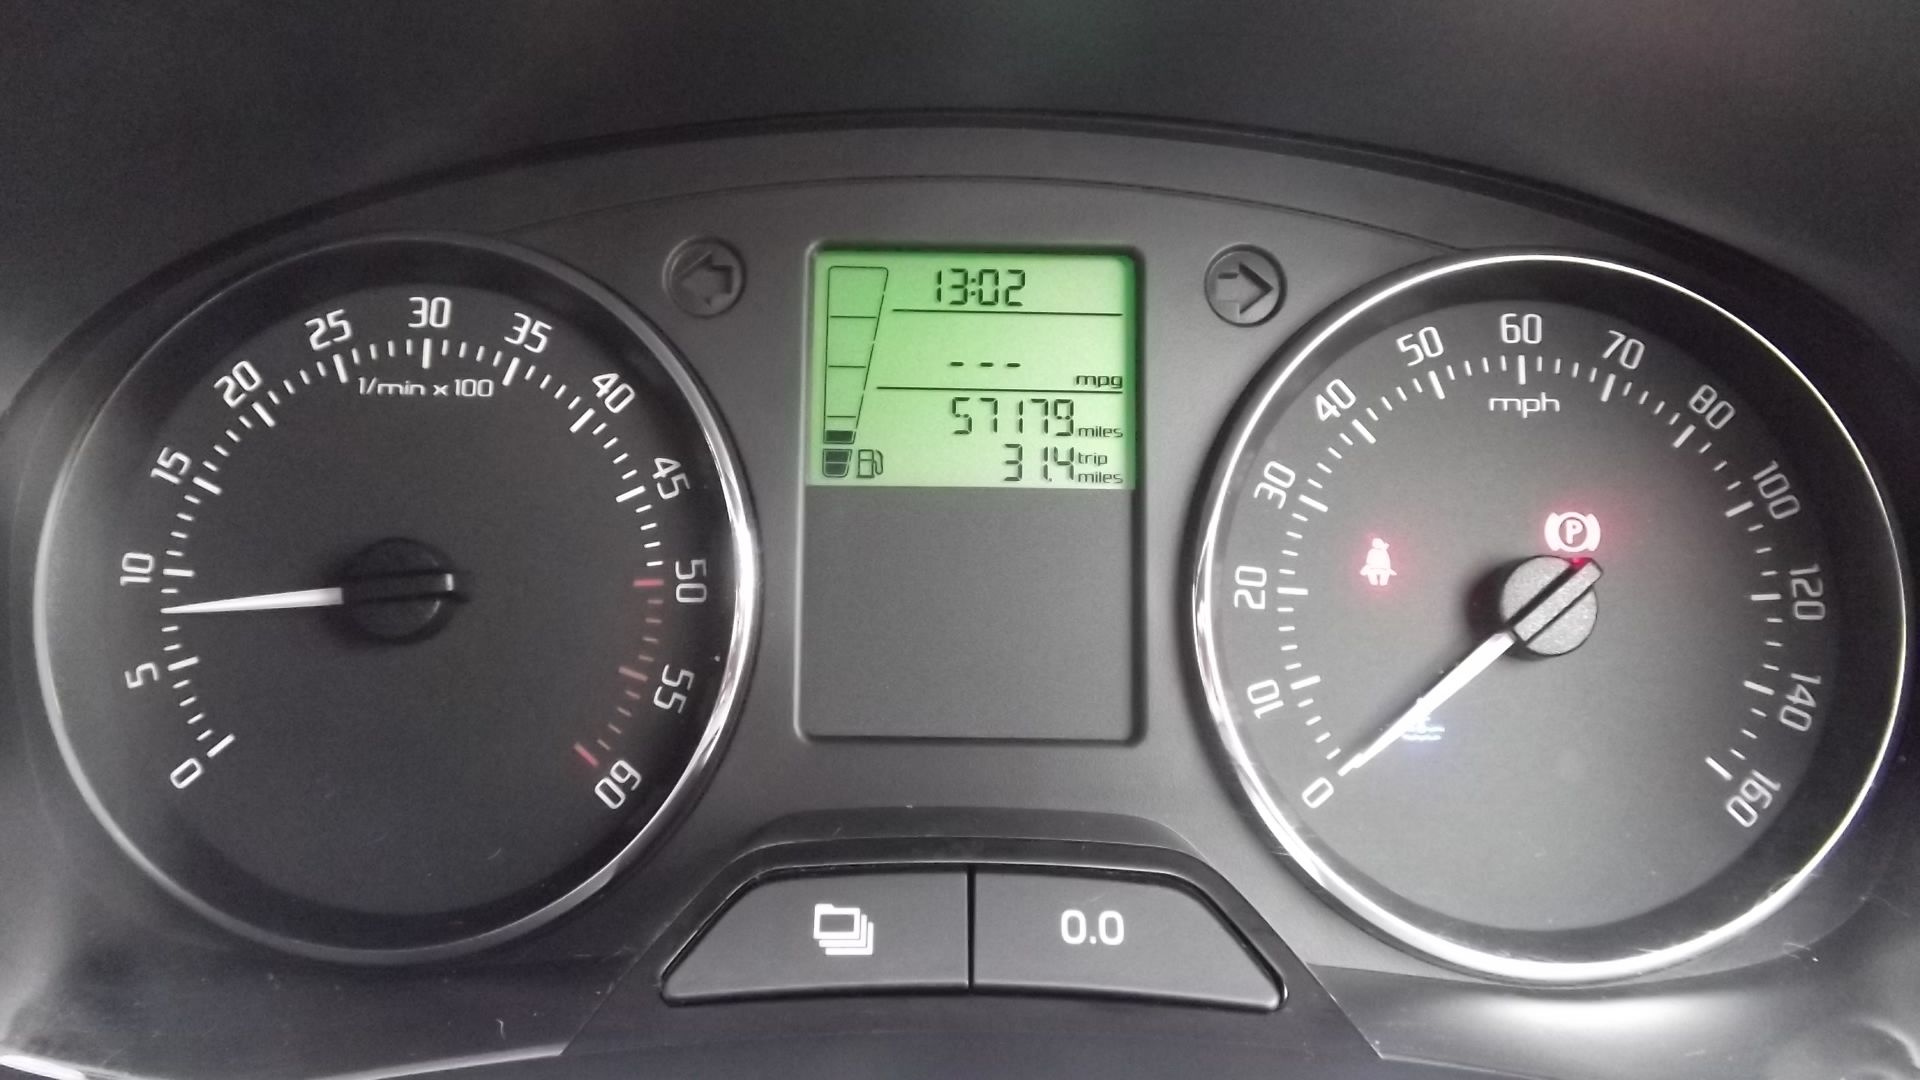 2014 Skoda Fabia Monte Carlo 1.6 Tdi Cr 5Dr Hatchback - CL505 - NO VAT ON THE HAMMER - - Image 21 of 26